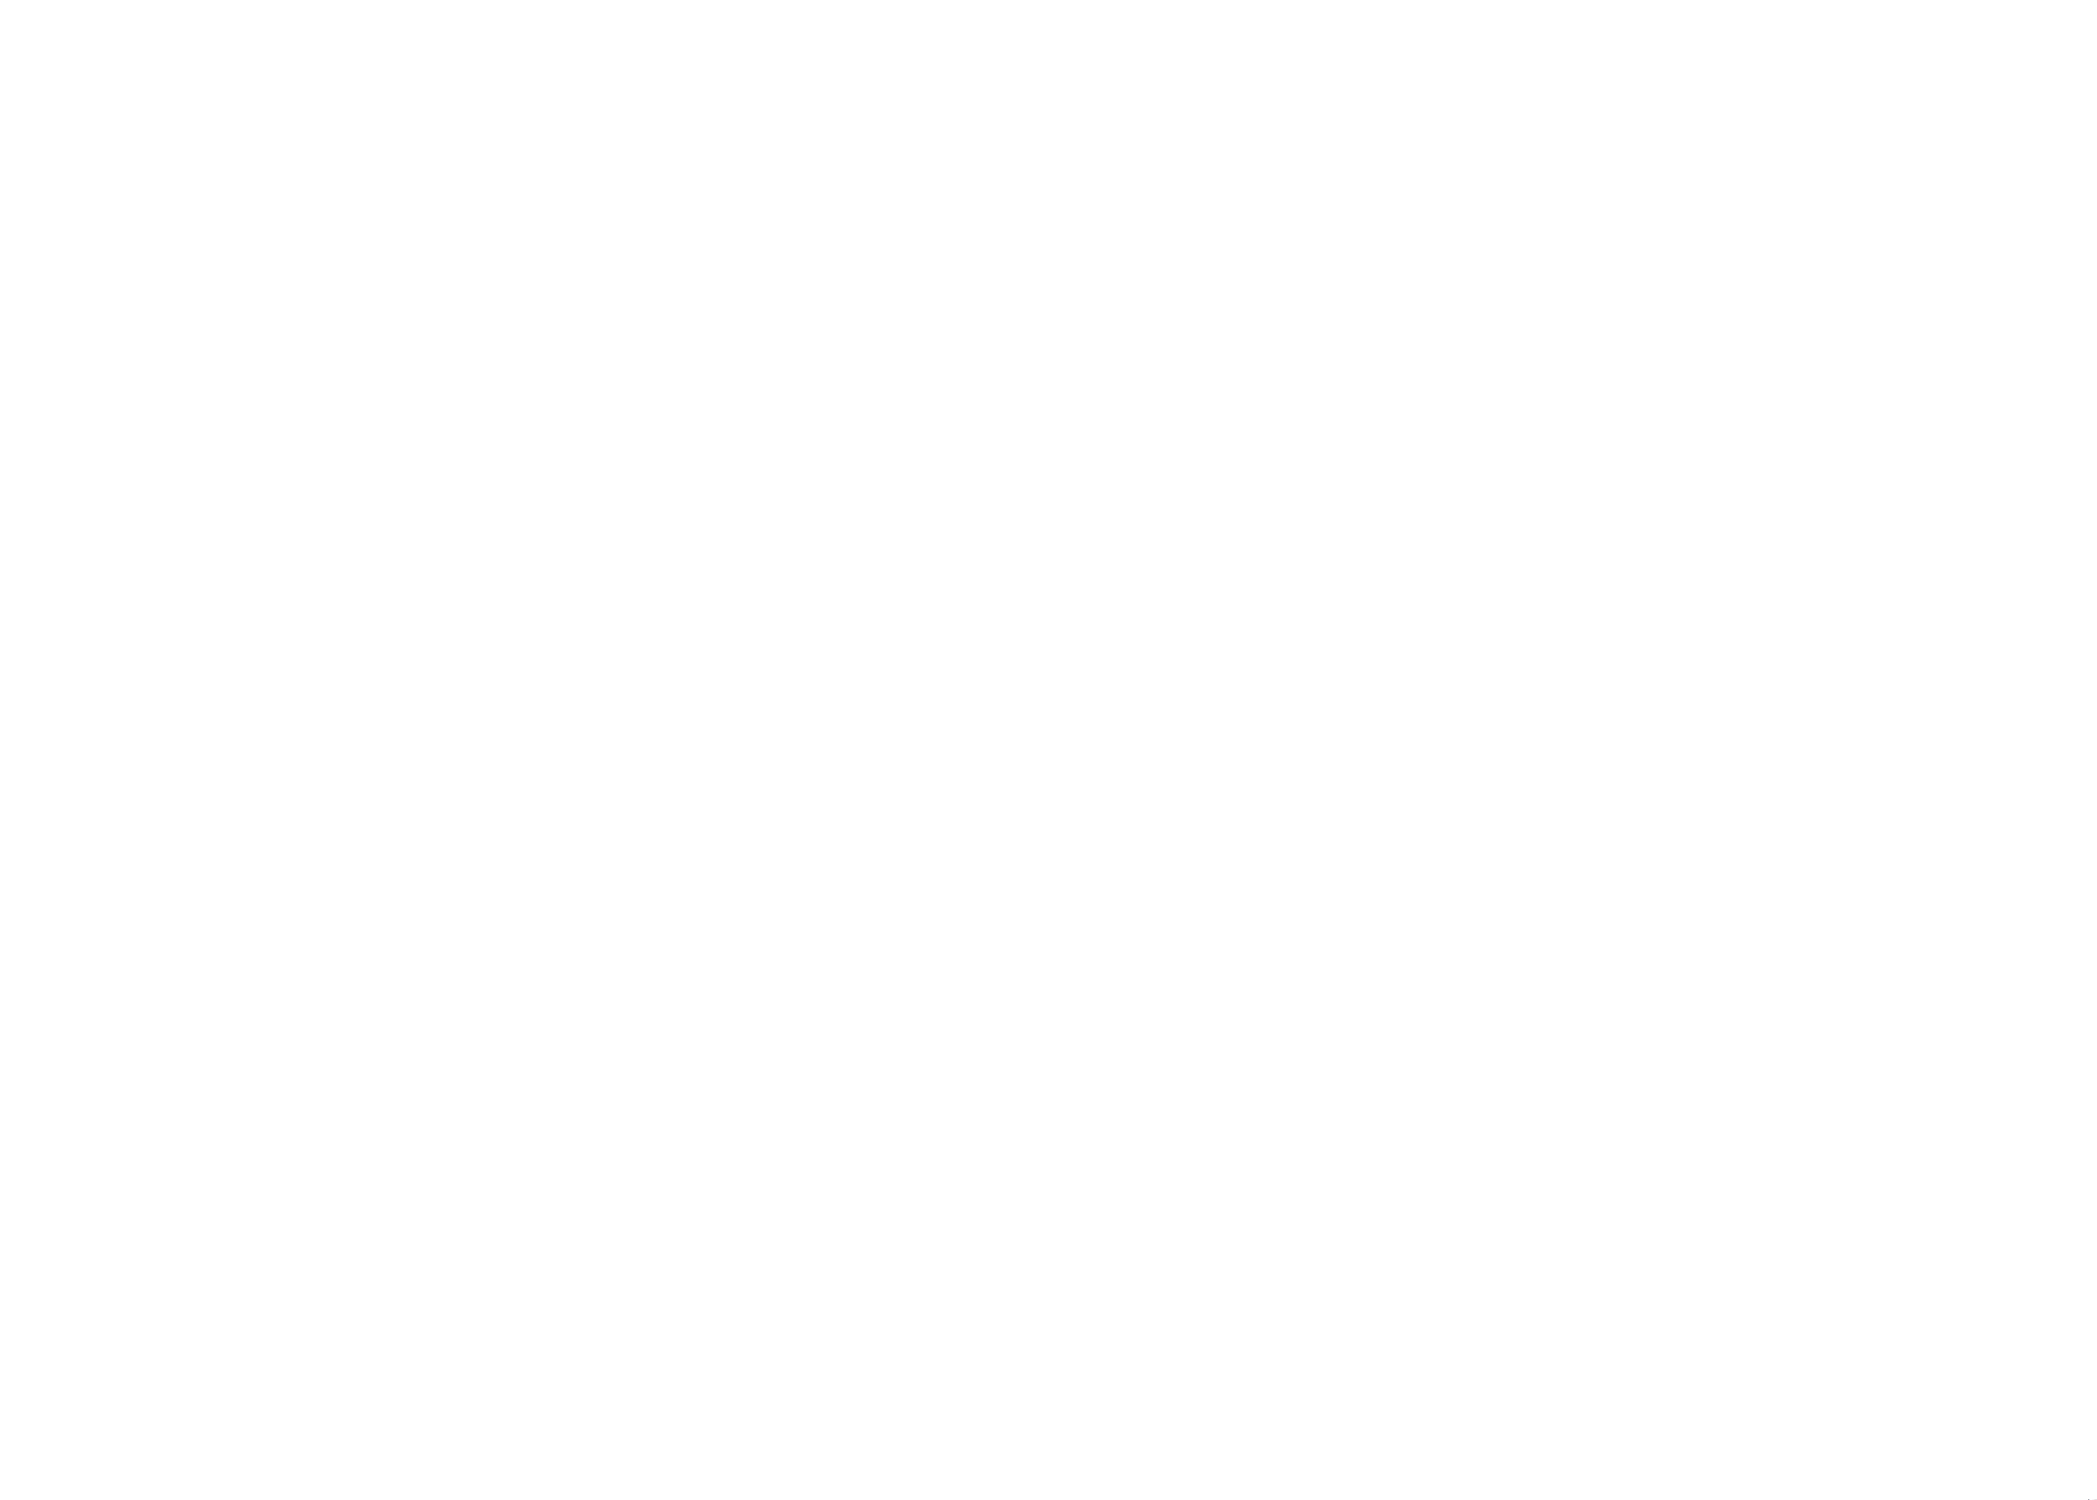 Filip Popa